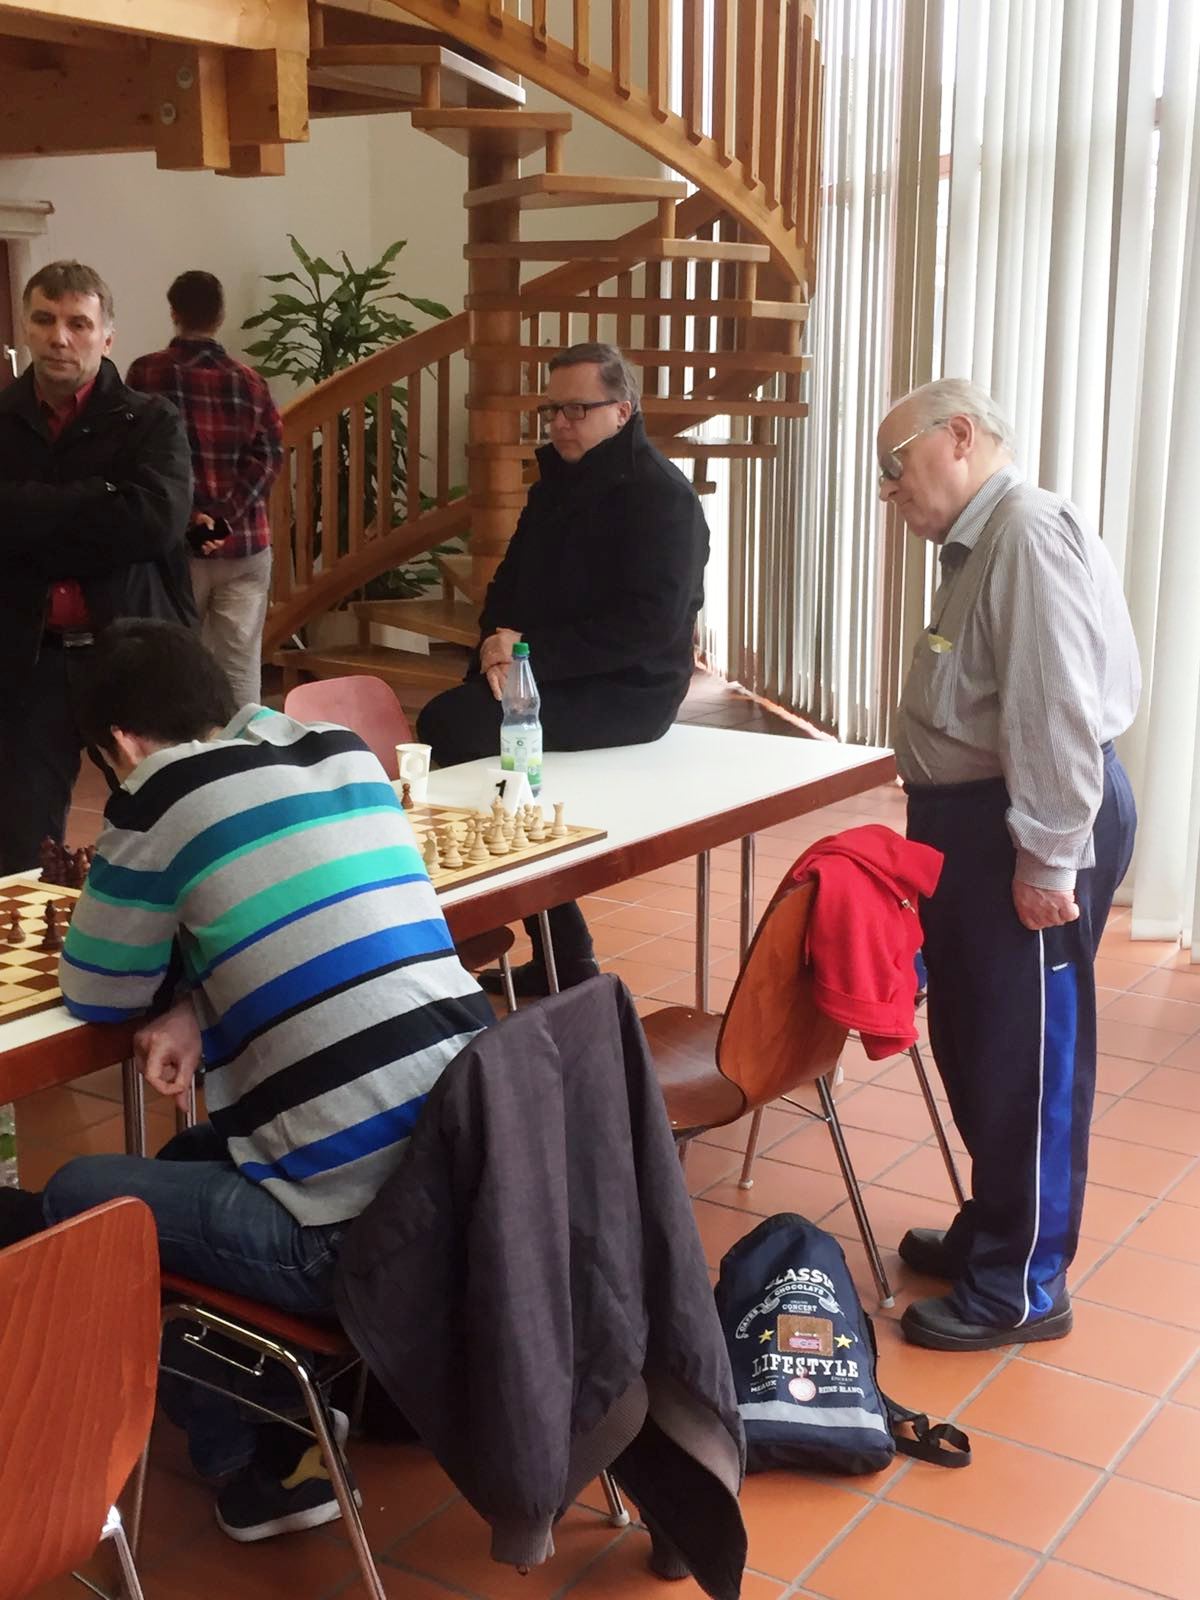 Ostermeyer spielt Schach